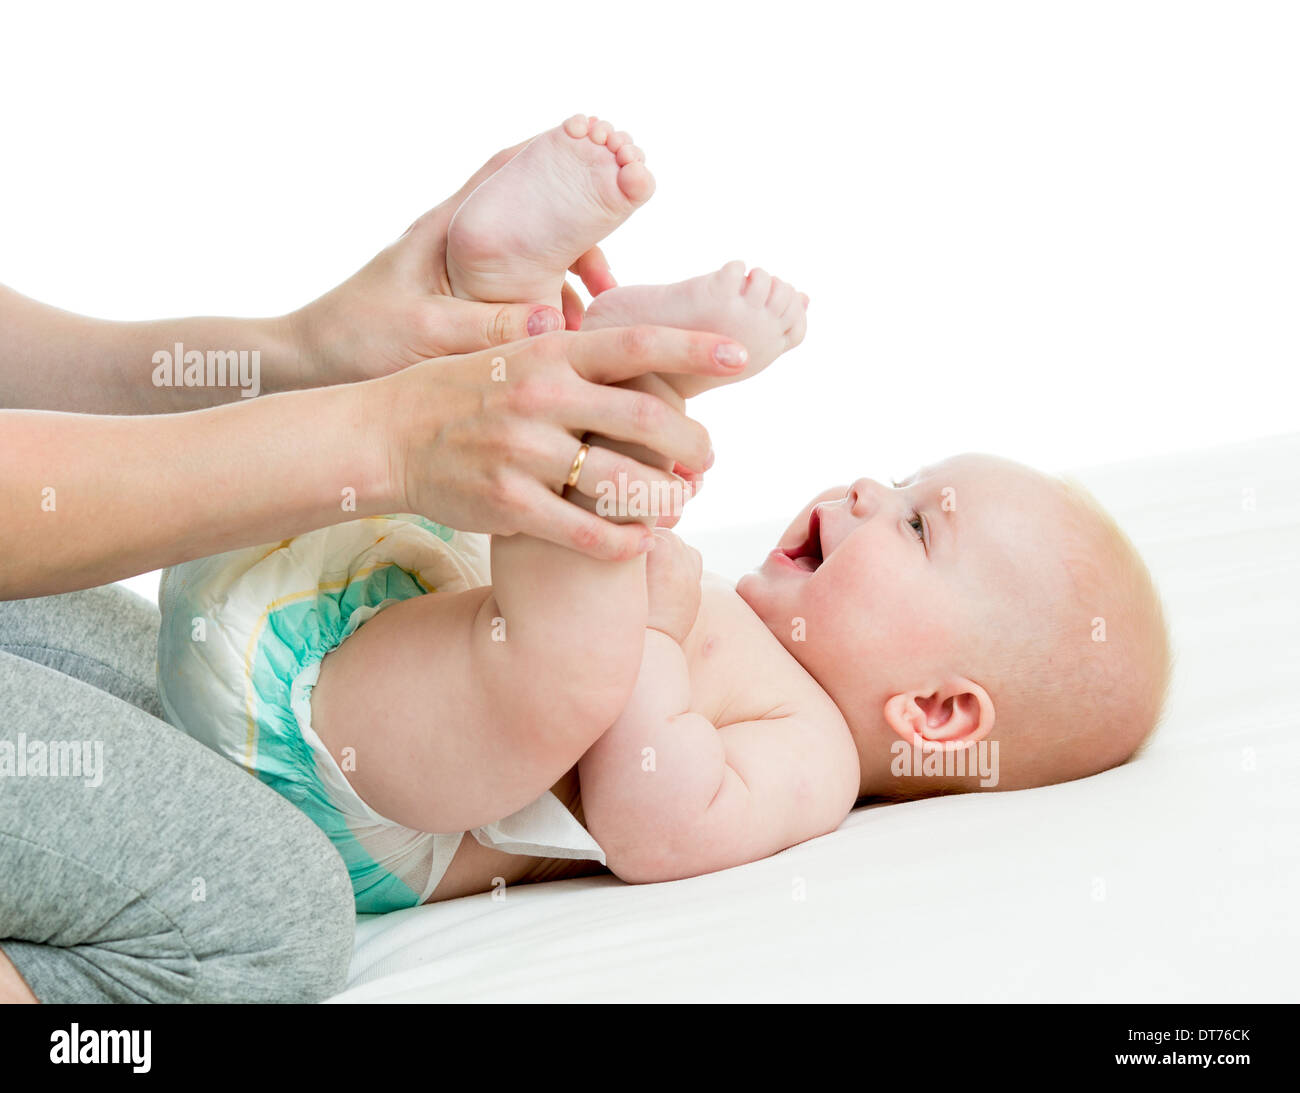 Руки и ноги коликами. Колики. Ноги к животу у новорожденных. Ножки к животику при коликах у новорожденных.